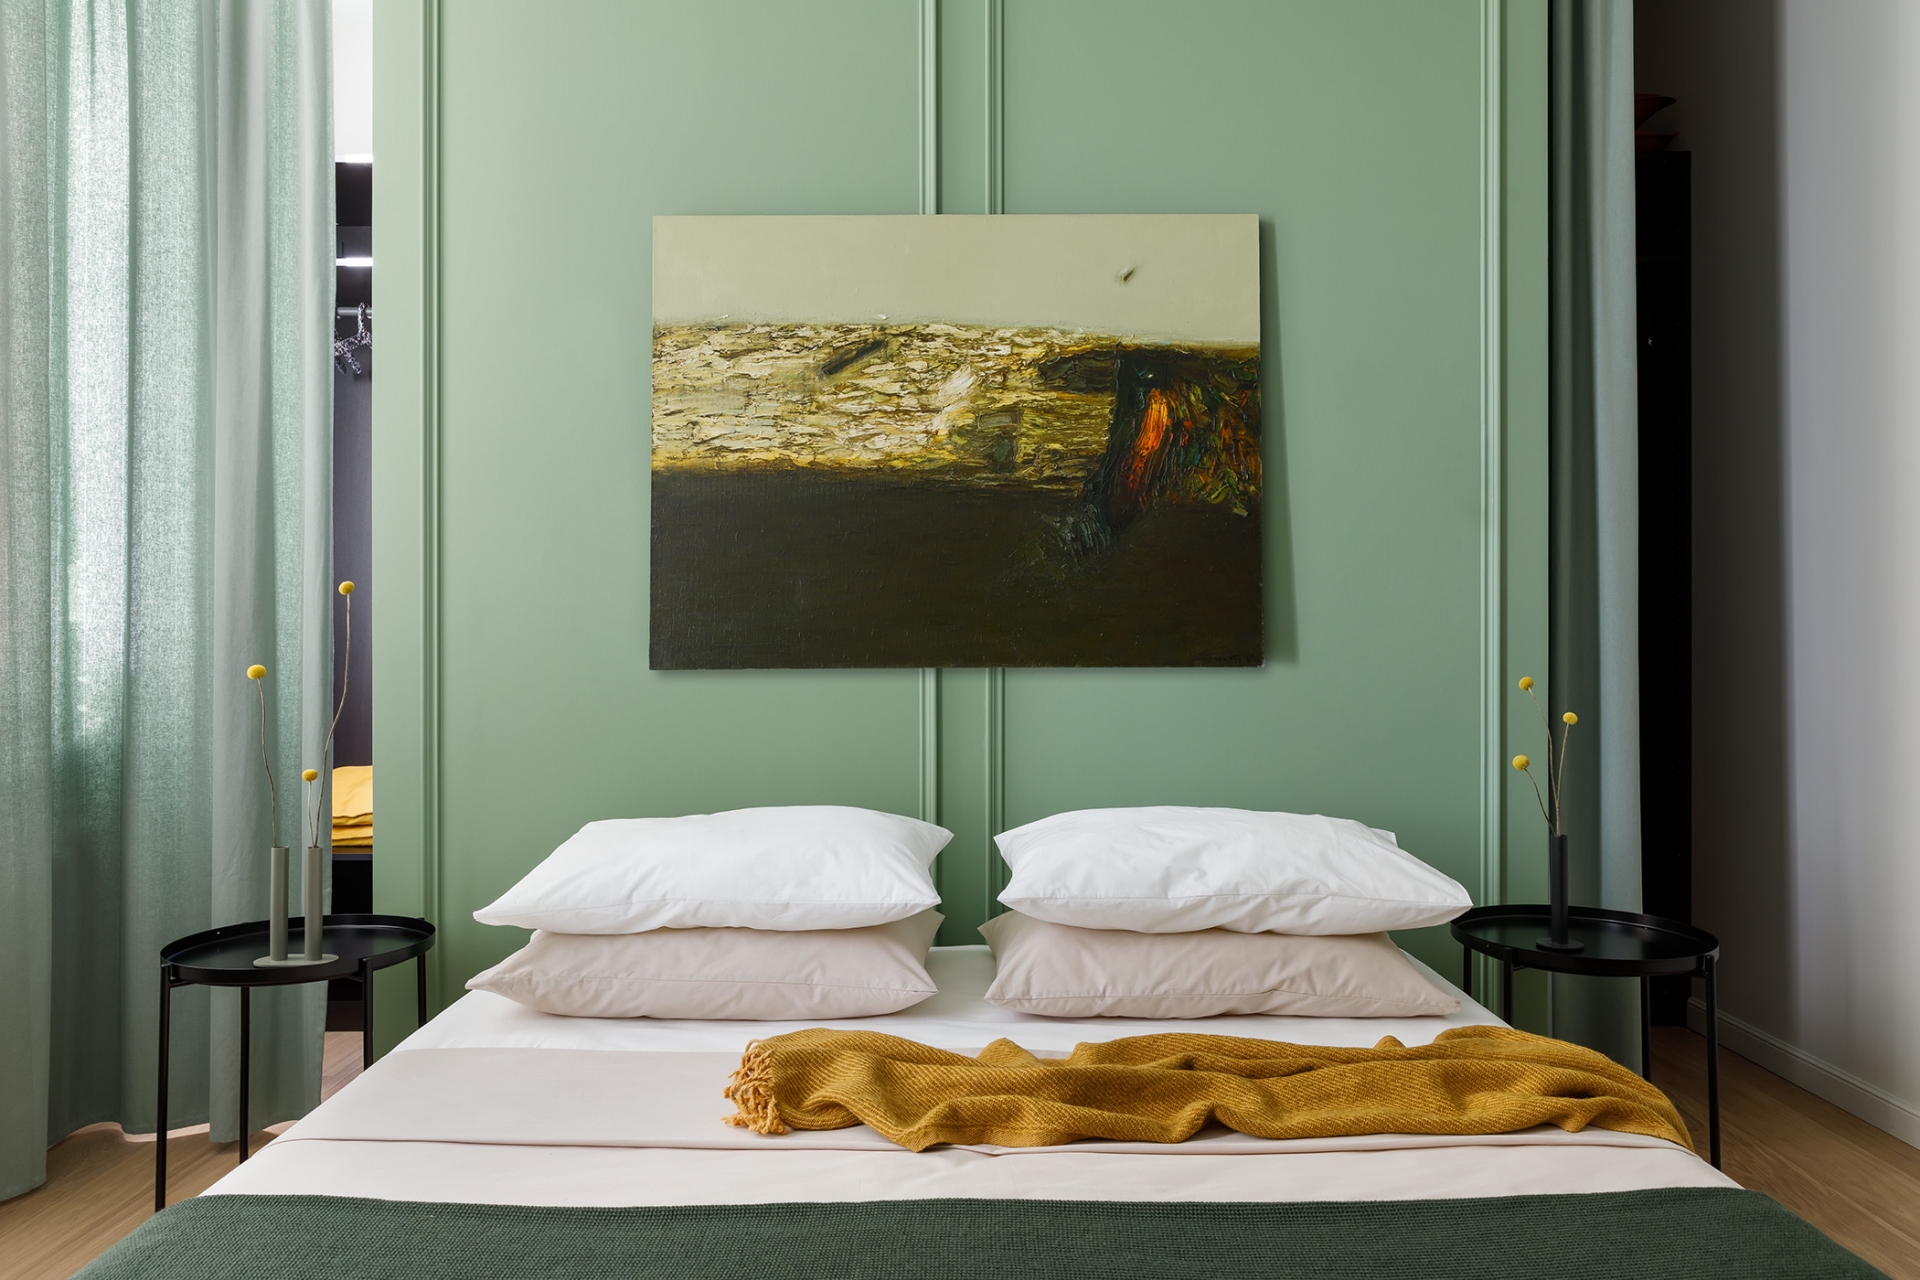 Với tiêu chí tiết kiệm, cặp đôi đã tận dụng những món nội thất còn tốt từ căn hộ cũ, chiếc giường này là một trong số đó. NTK chỉ thay bộ chăn ga gối mới, kết hợp với sơn tường màu xanh ô liu và rèm che thanh thoát nhẹ nhàng.